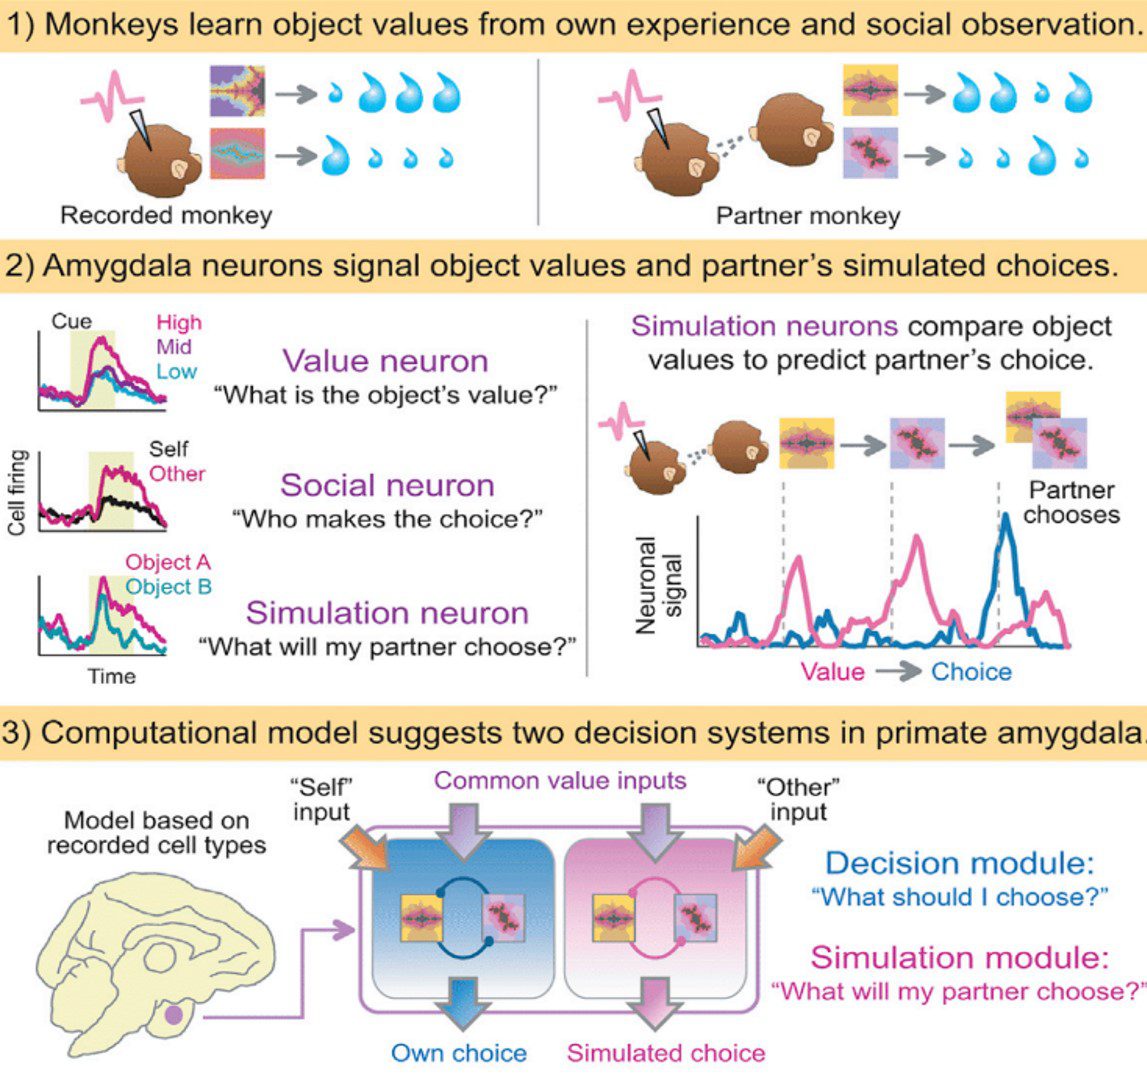 las neuronas “mindreading”,  células cerebrales capaces de tener expectativas sobre el comportamiento ajeno